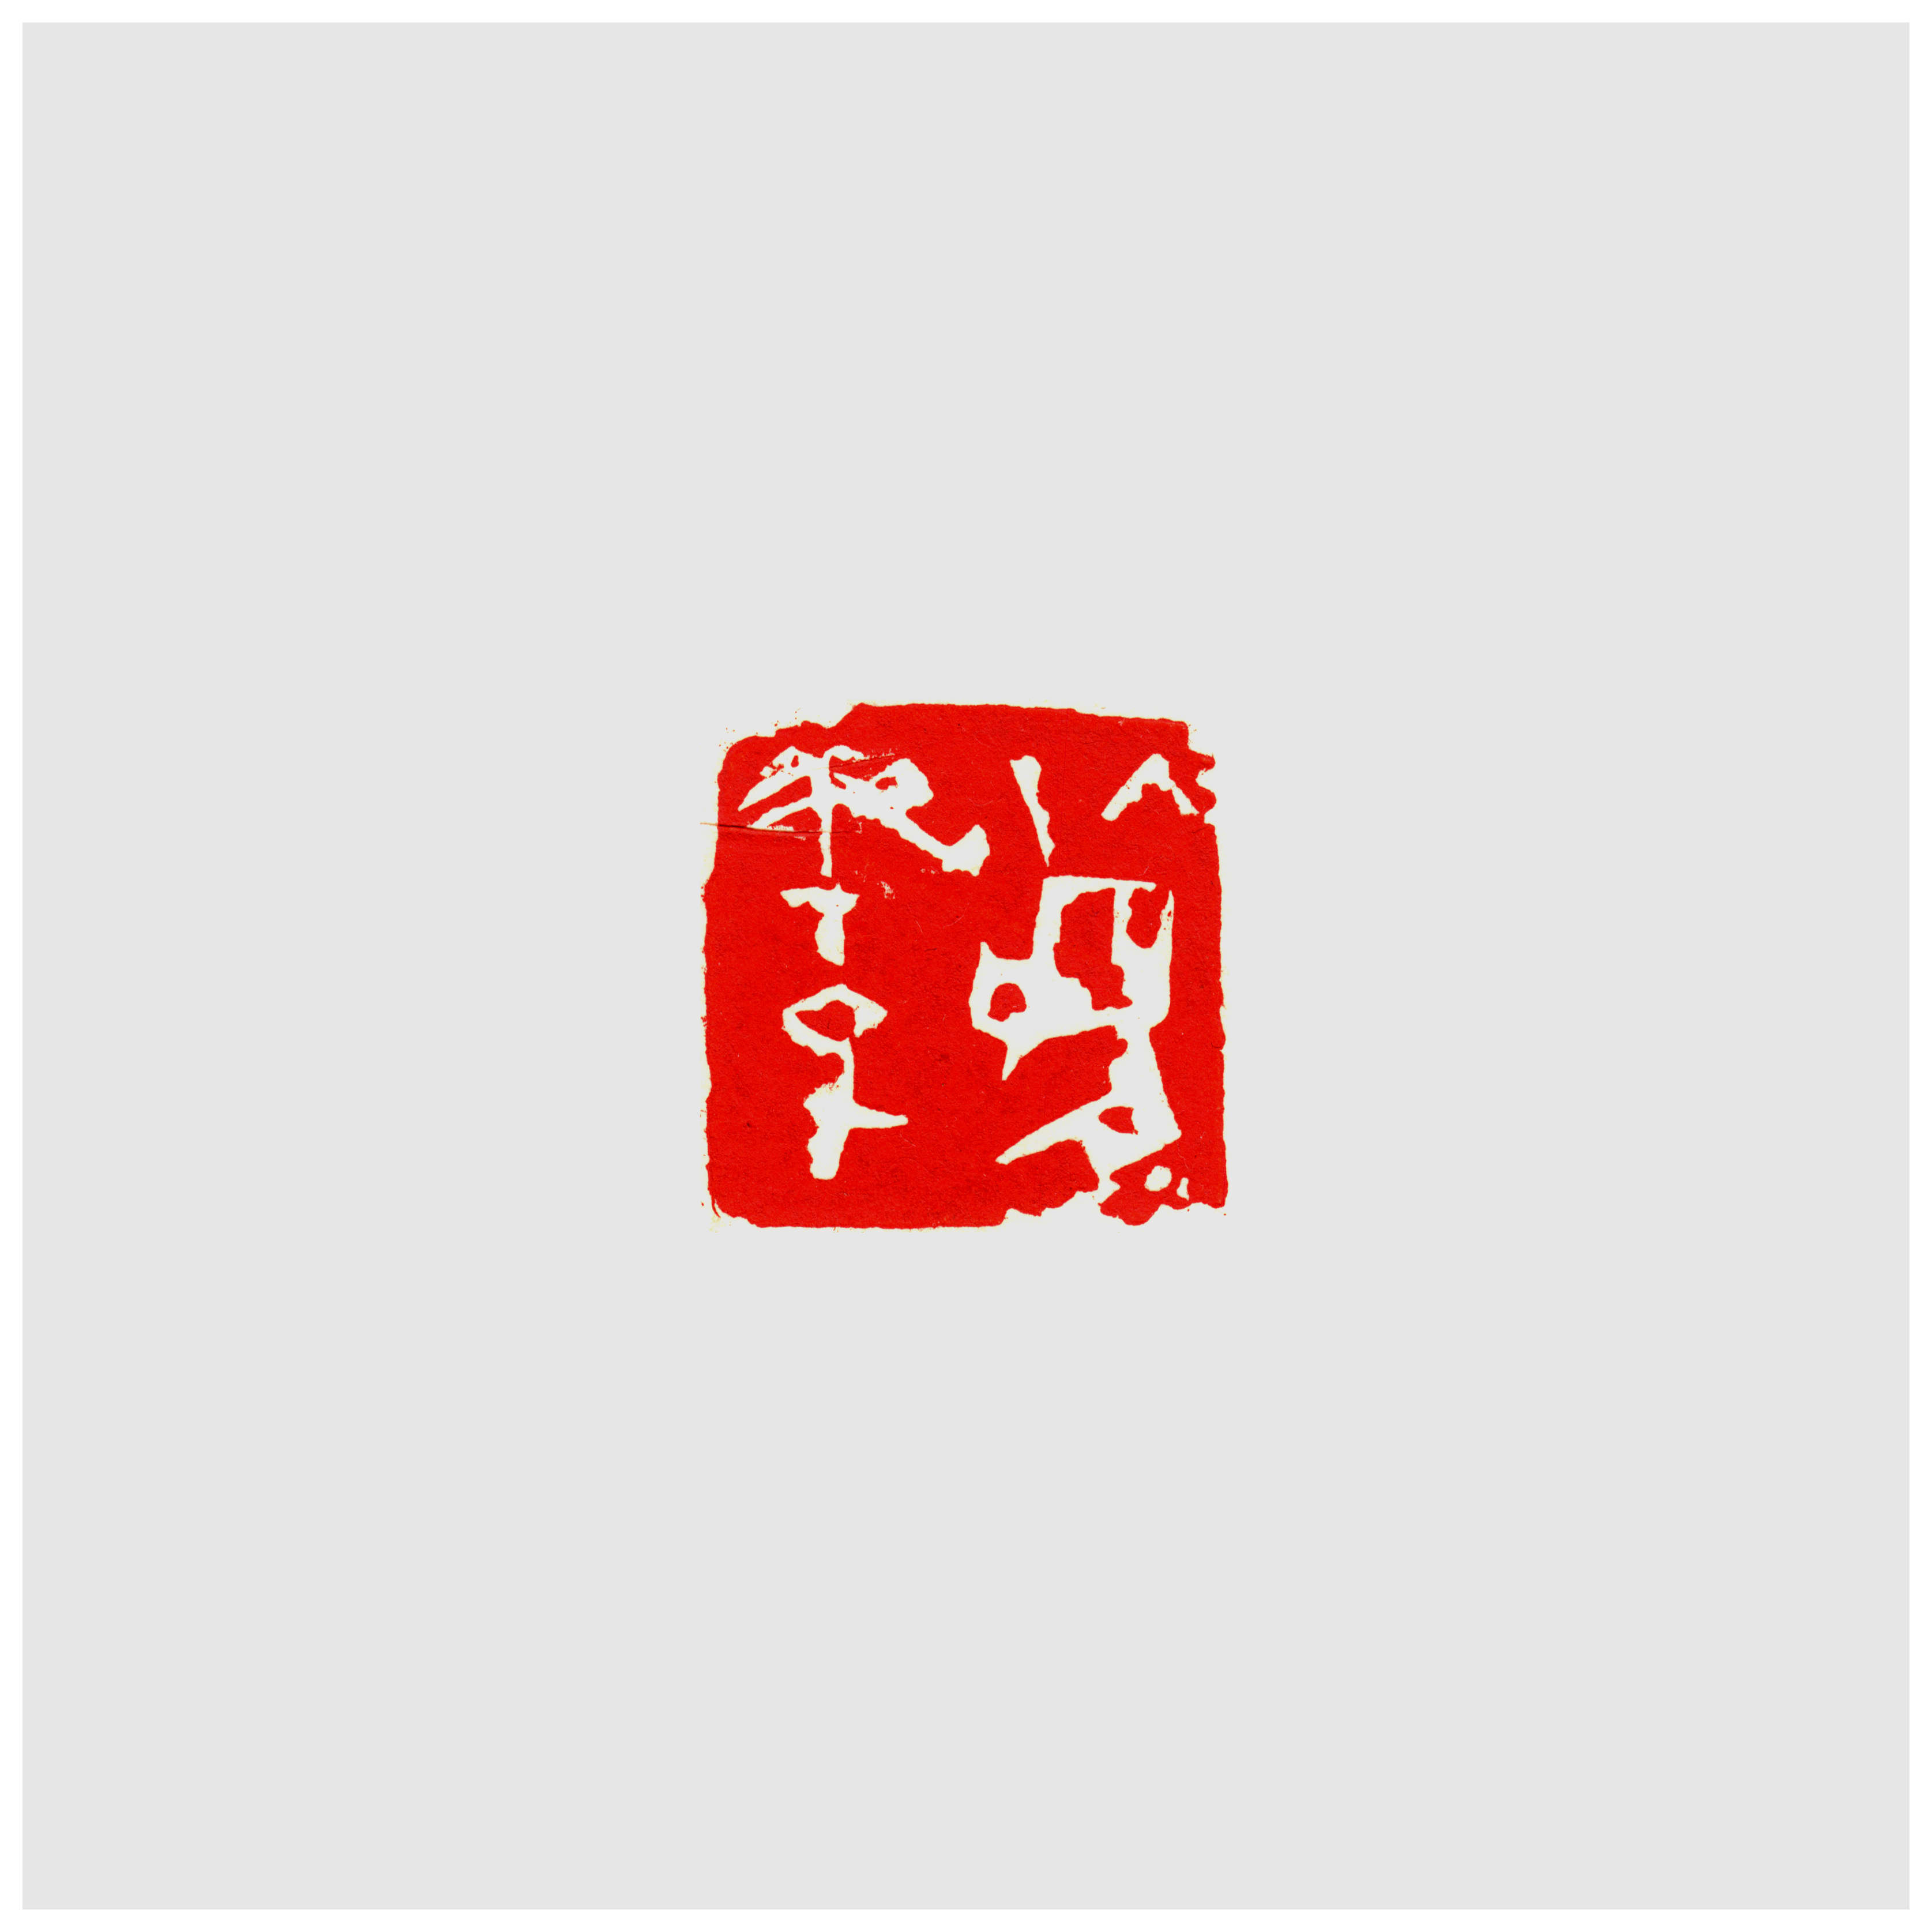 Qi Hong (Sai Koh) 's freehand brushwork style semi-seal script name seal carving (aka Chinese seal engraving, seal cutting) imprint: Yukako, 30×30mm, stone